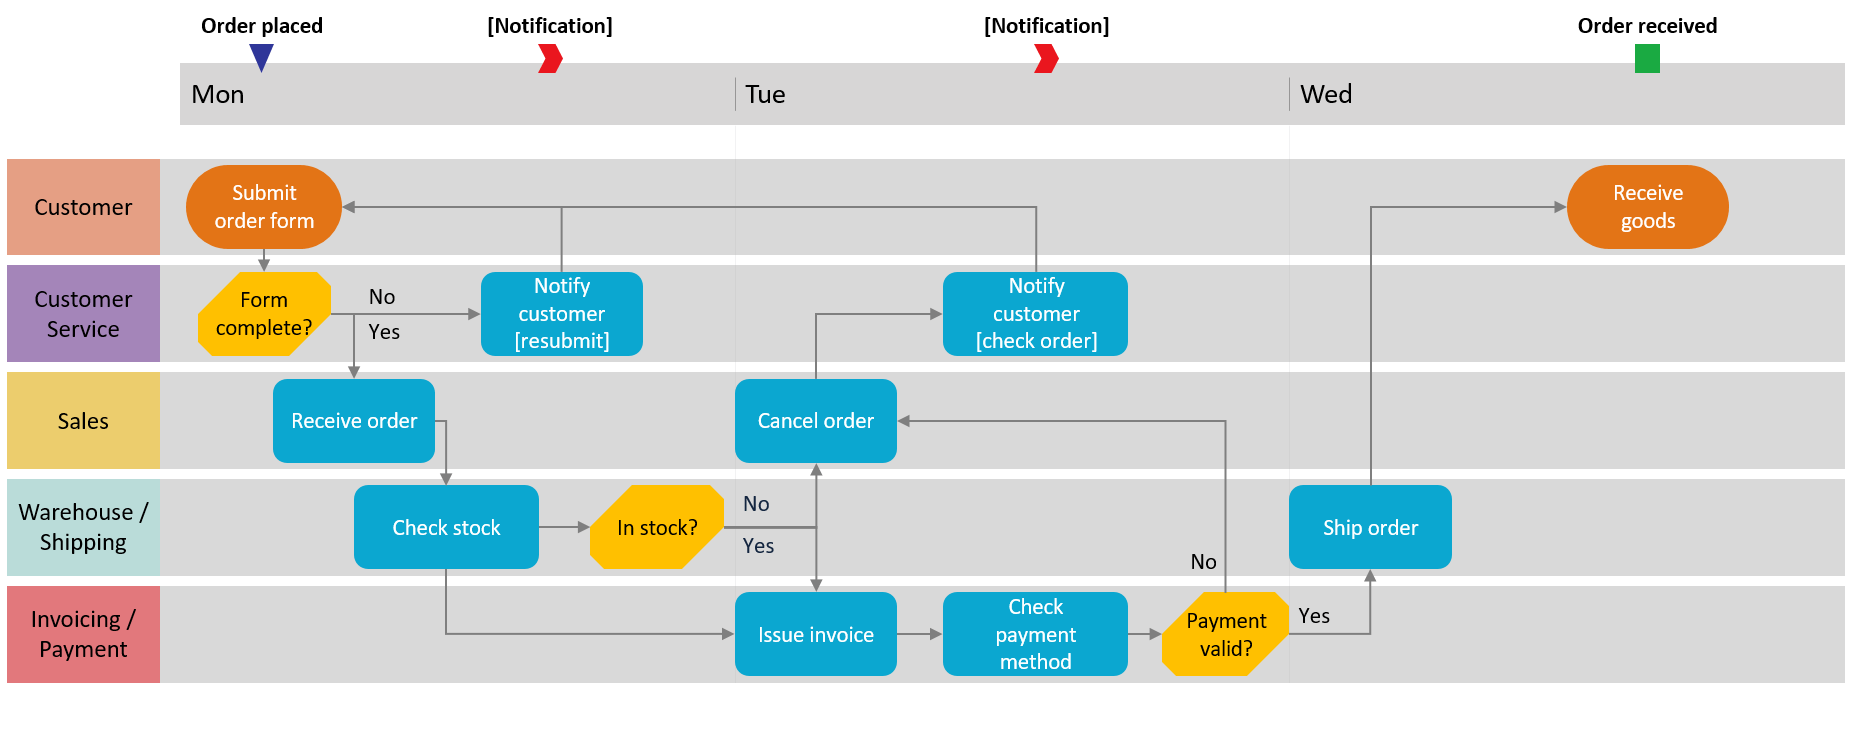 swim diagram template